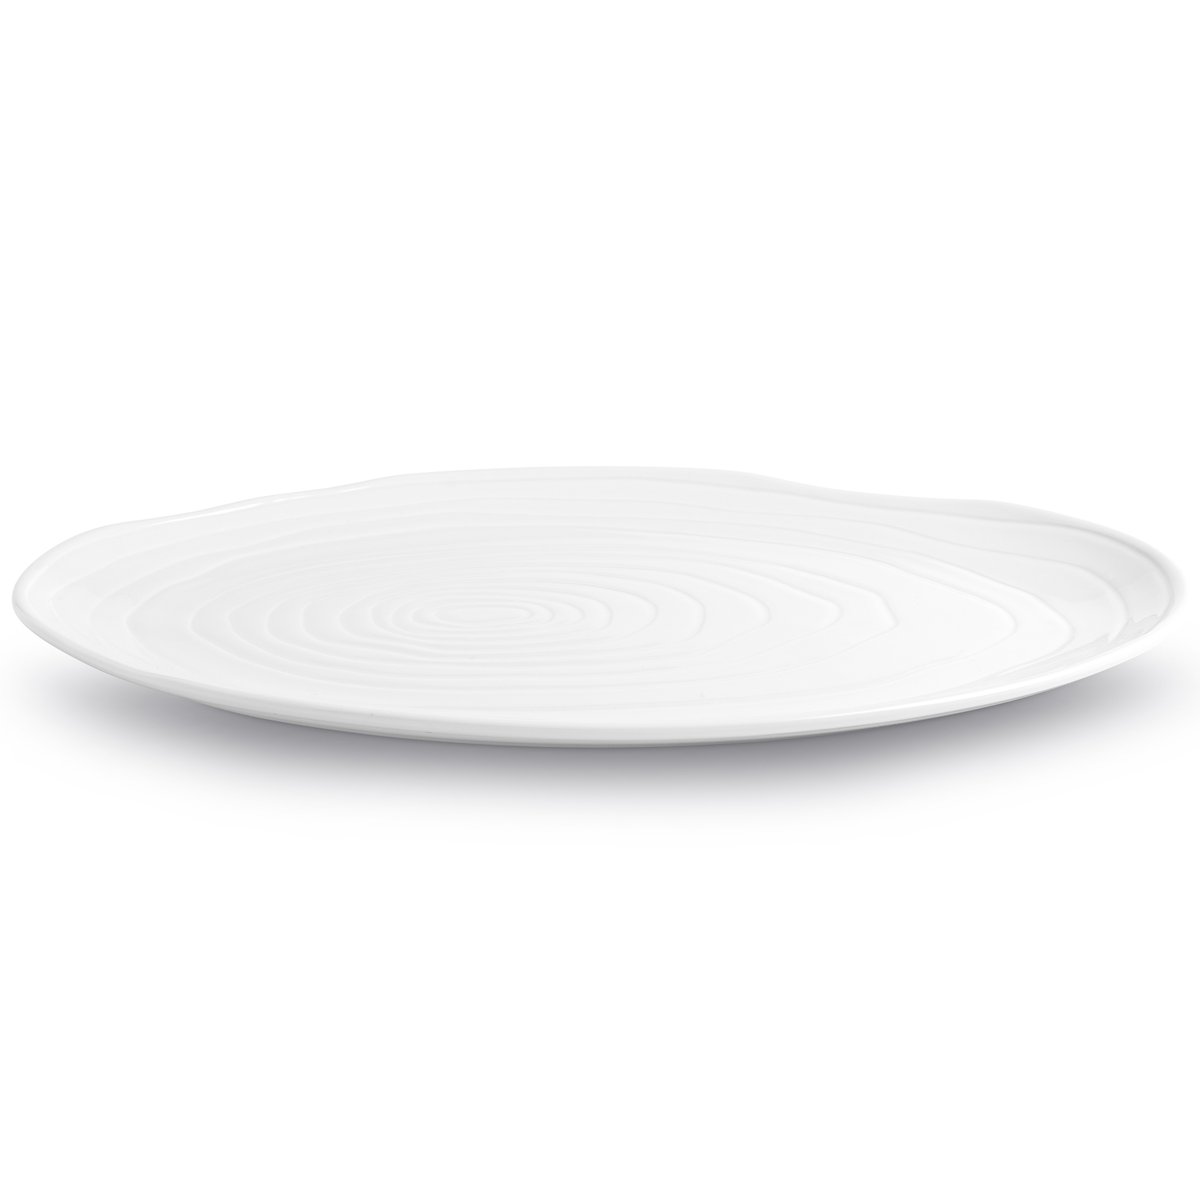 pillivuyt assiette boulogne ovale 26x36 cm blanc